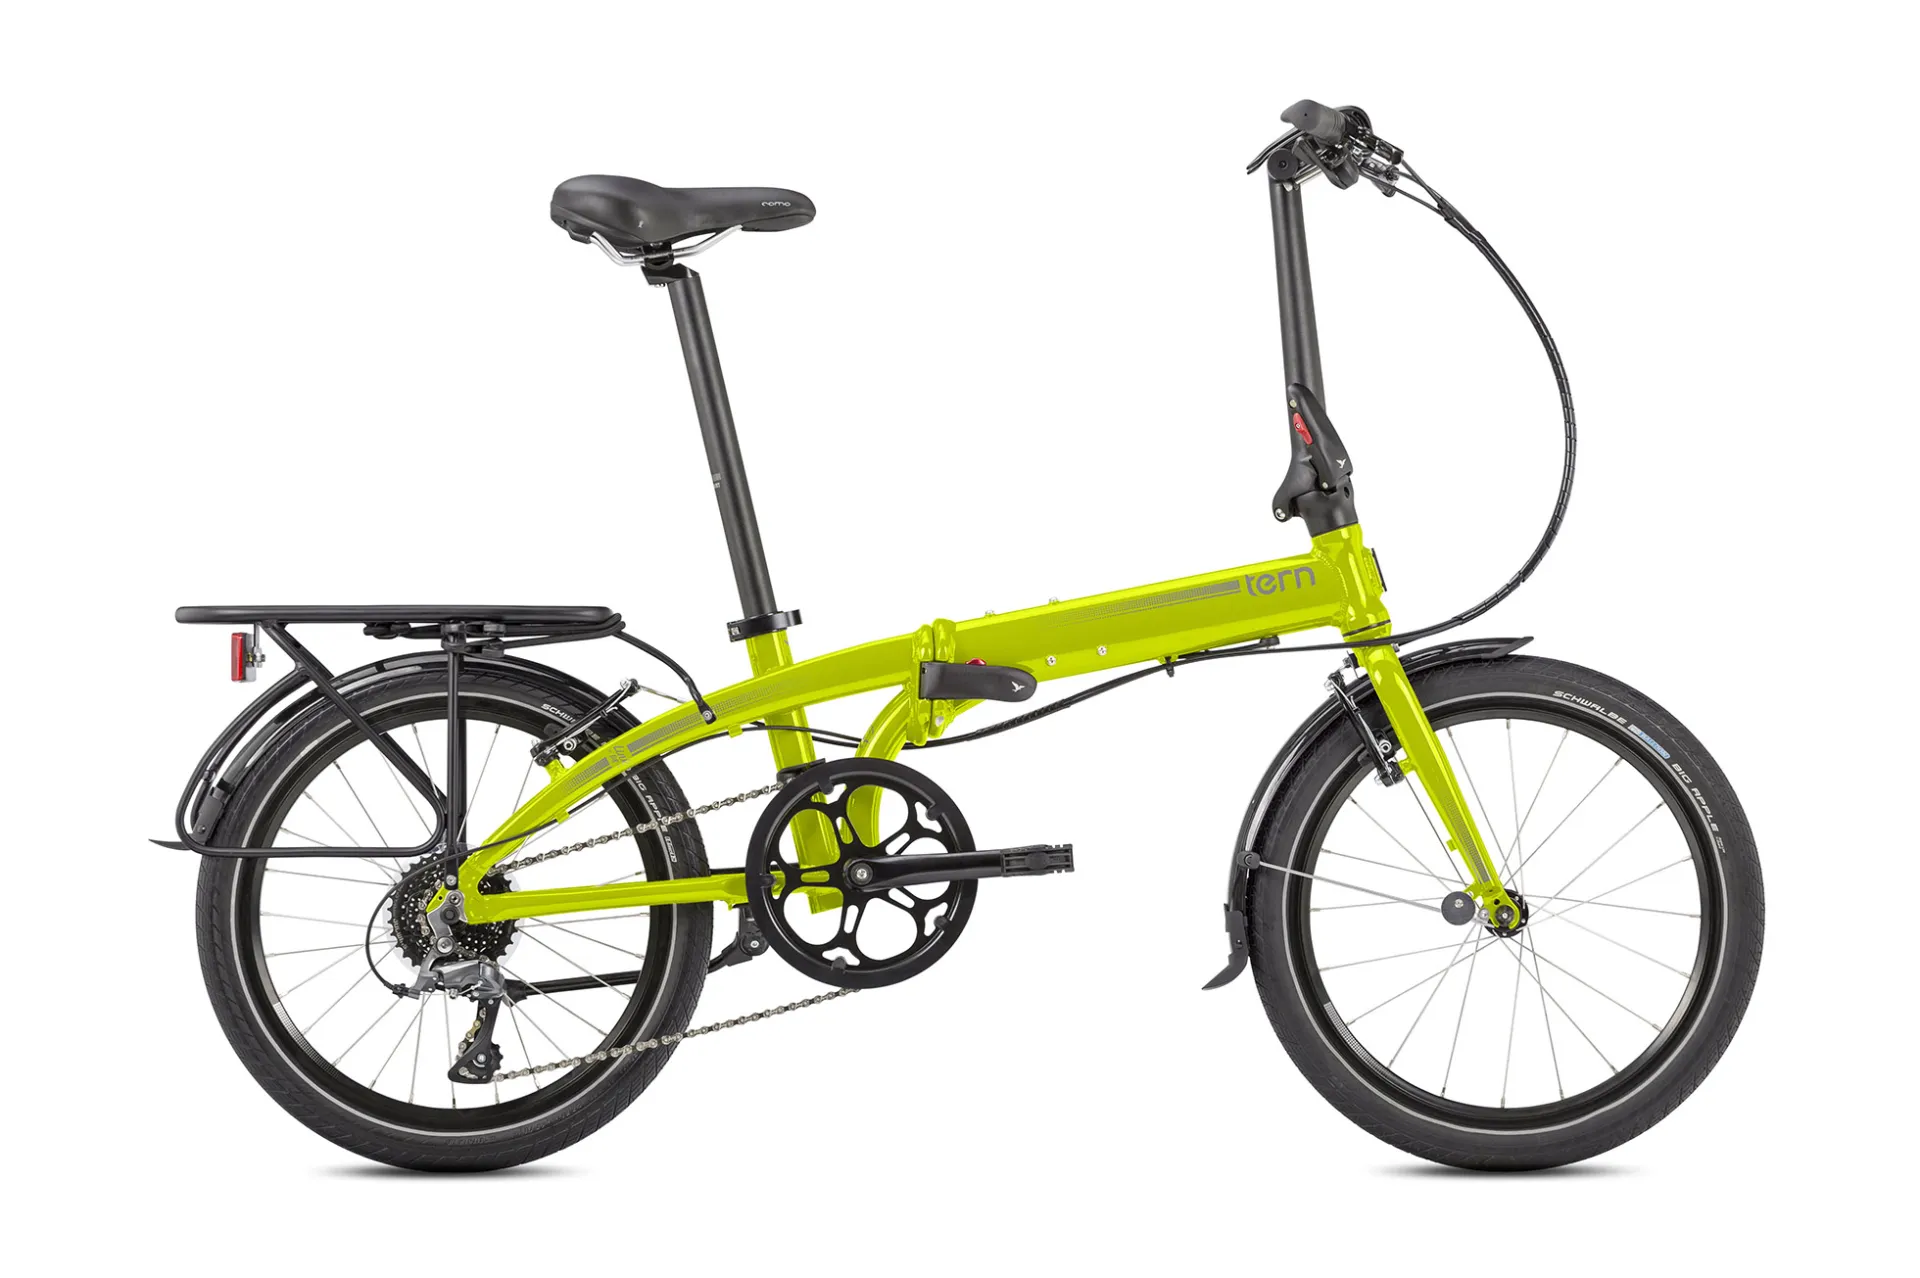 Link D8: Built tough for urban riding | Tern Bicycles